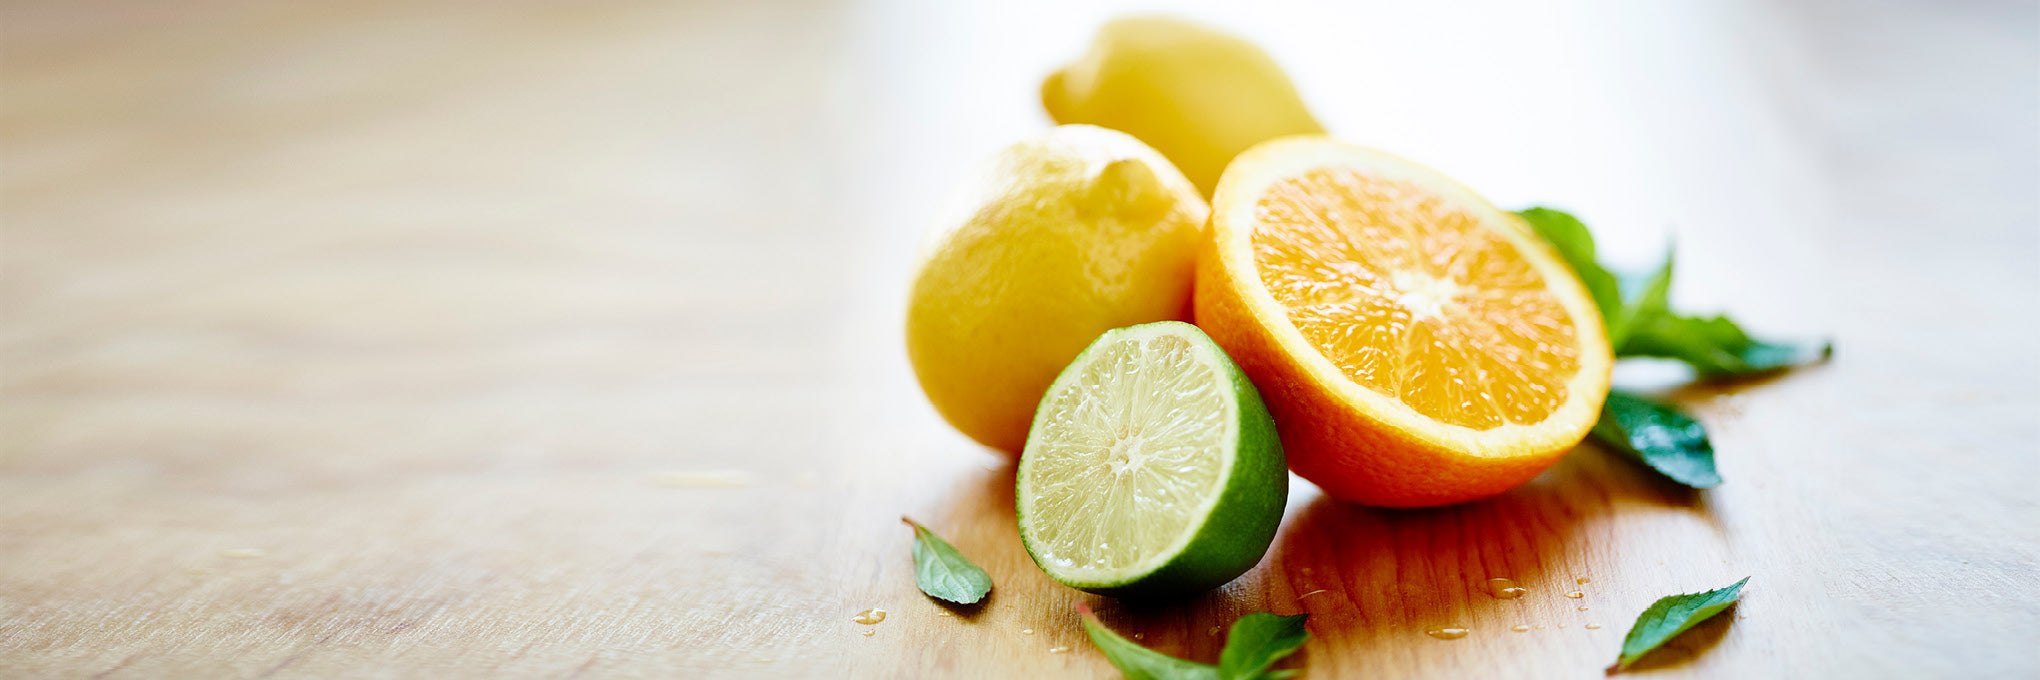 Featured terpenes: Citrus aromas